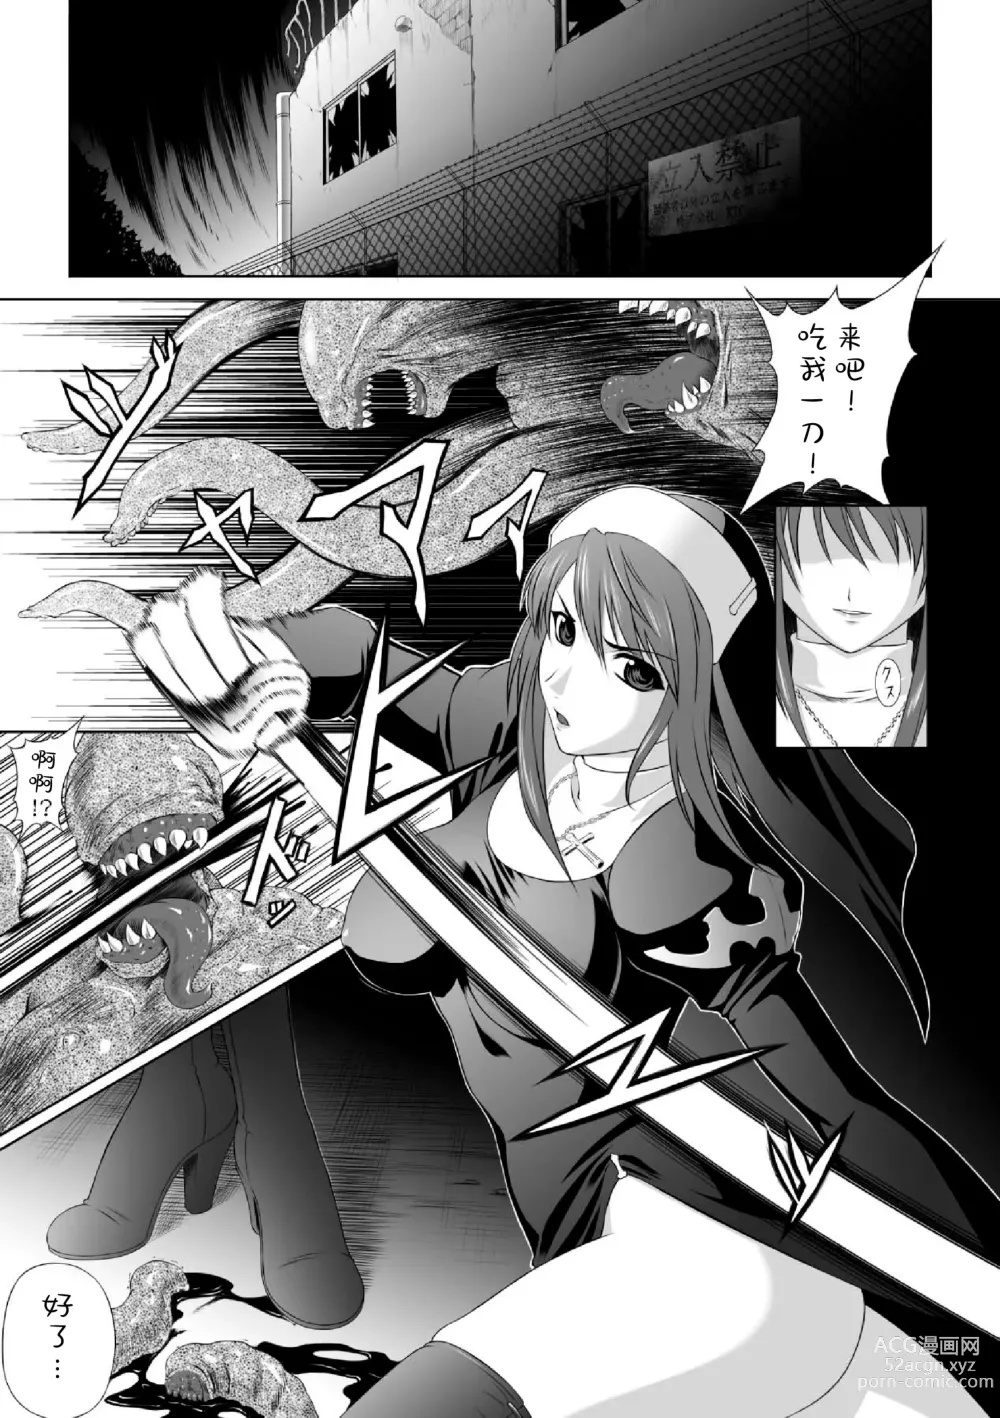 Page 4 of manga Ryoujoku no Rensa